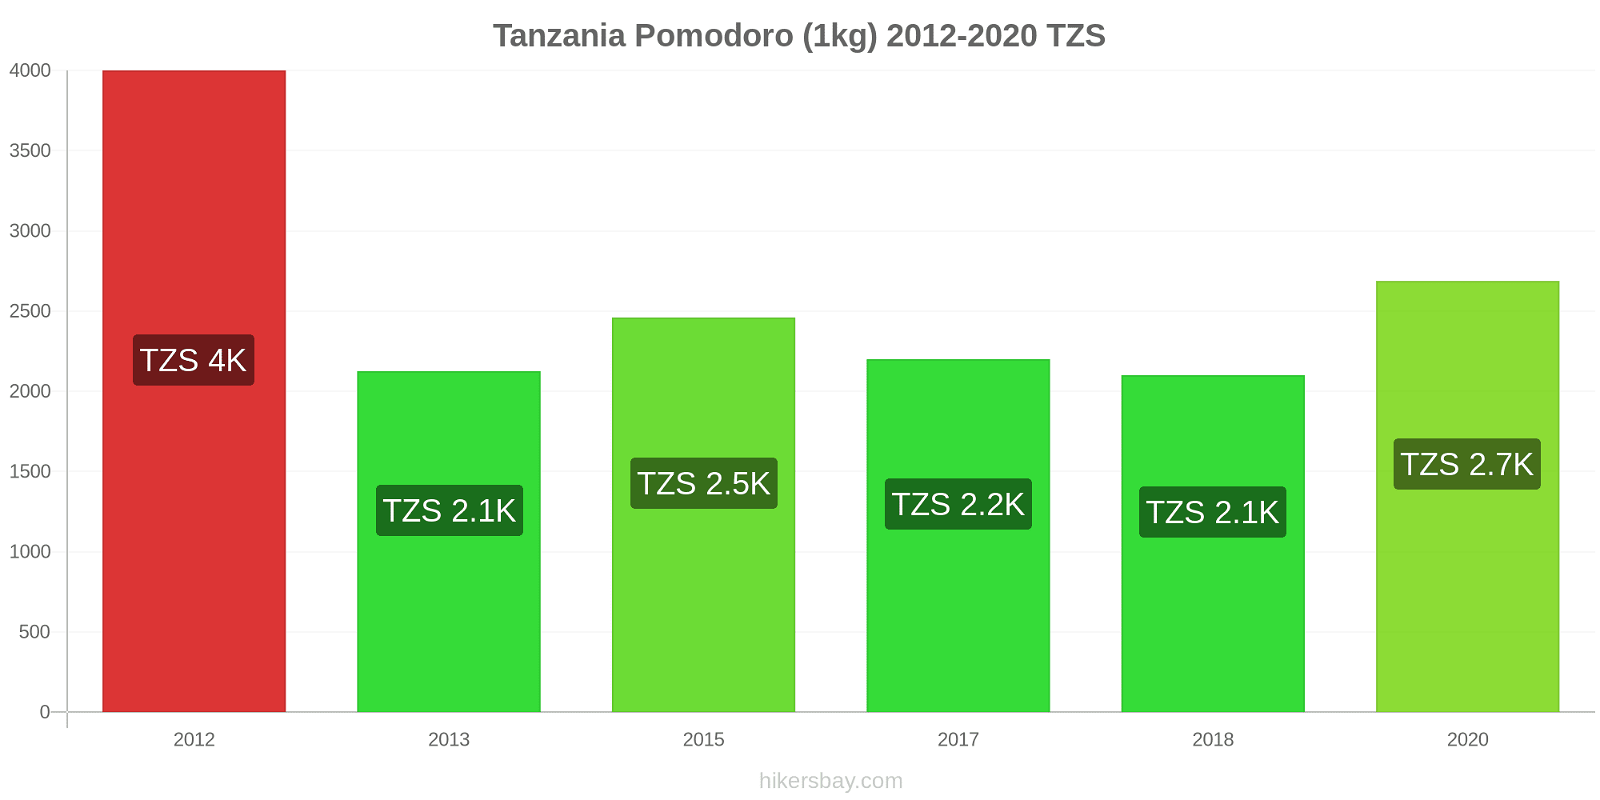 Tanzania variazioni di prezzo Pomodoro (1kg) hikersbay.com